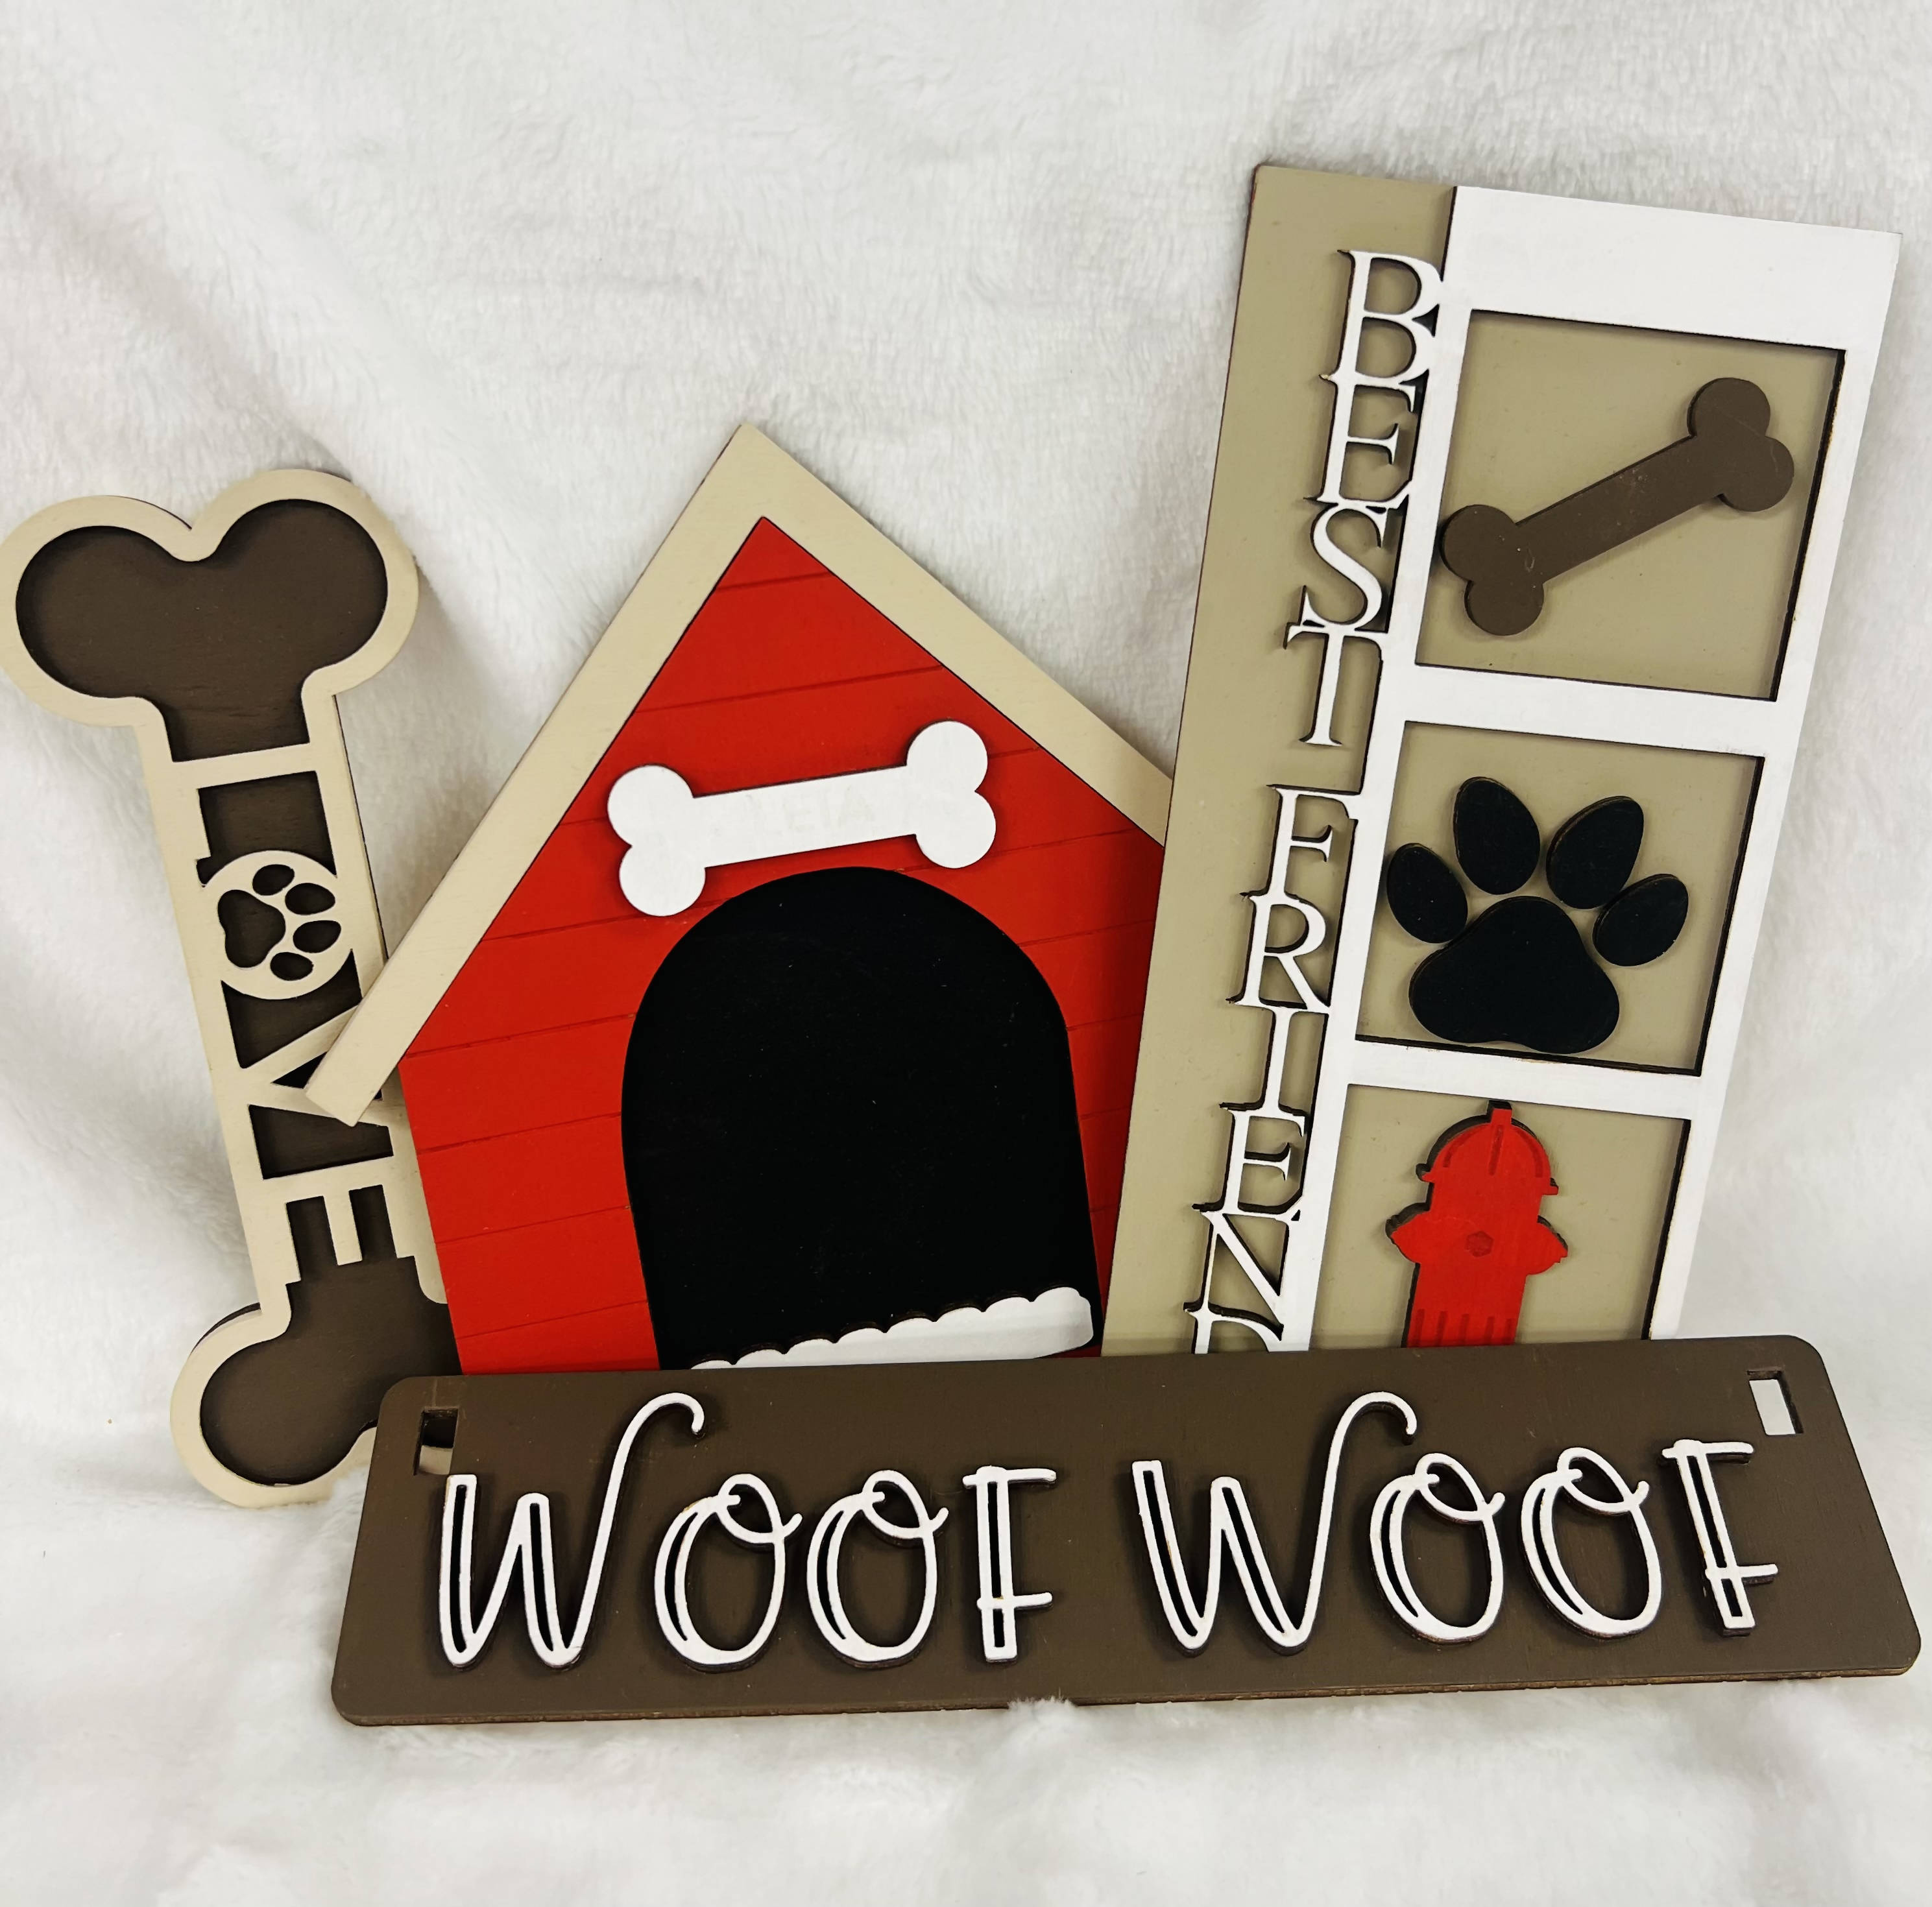 Wood Decor Set - (Woof Woof ) VF52